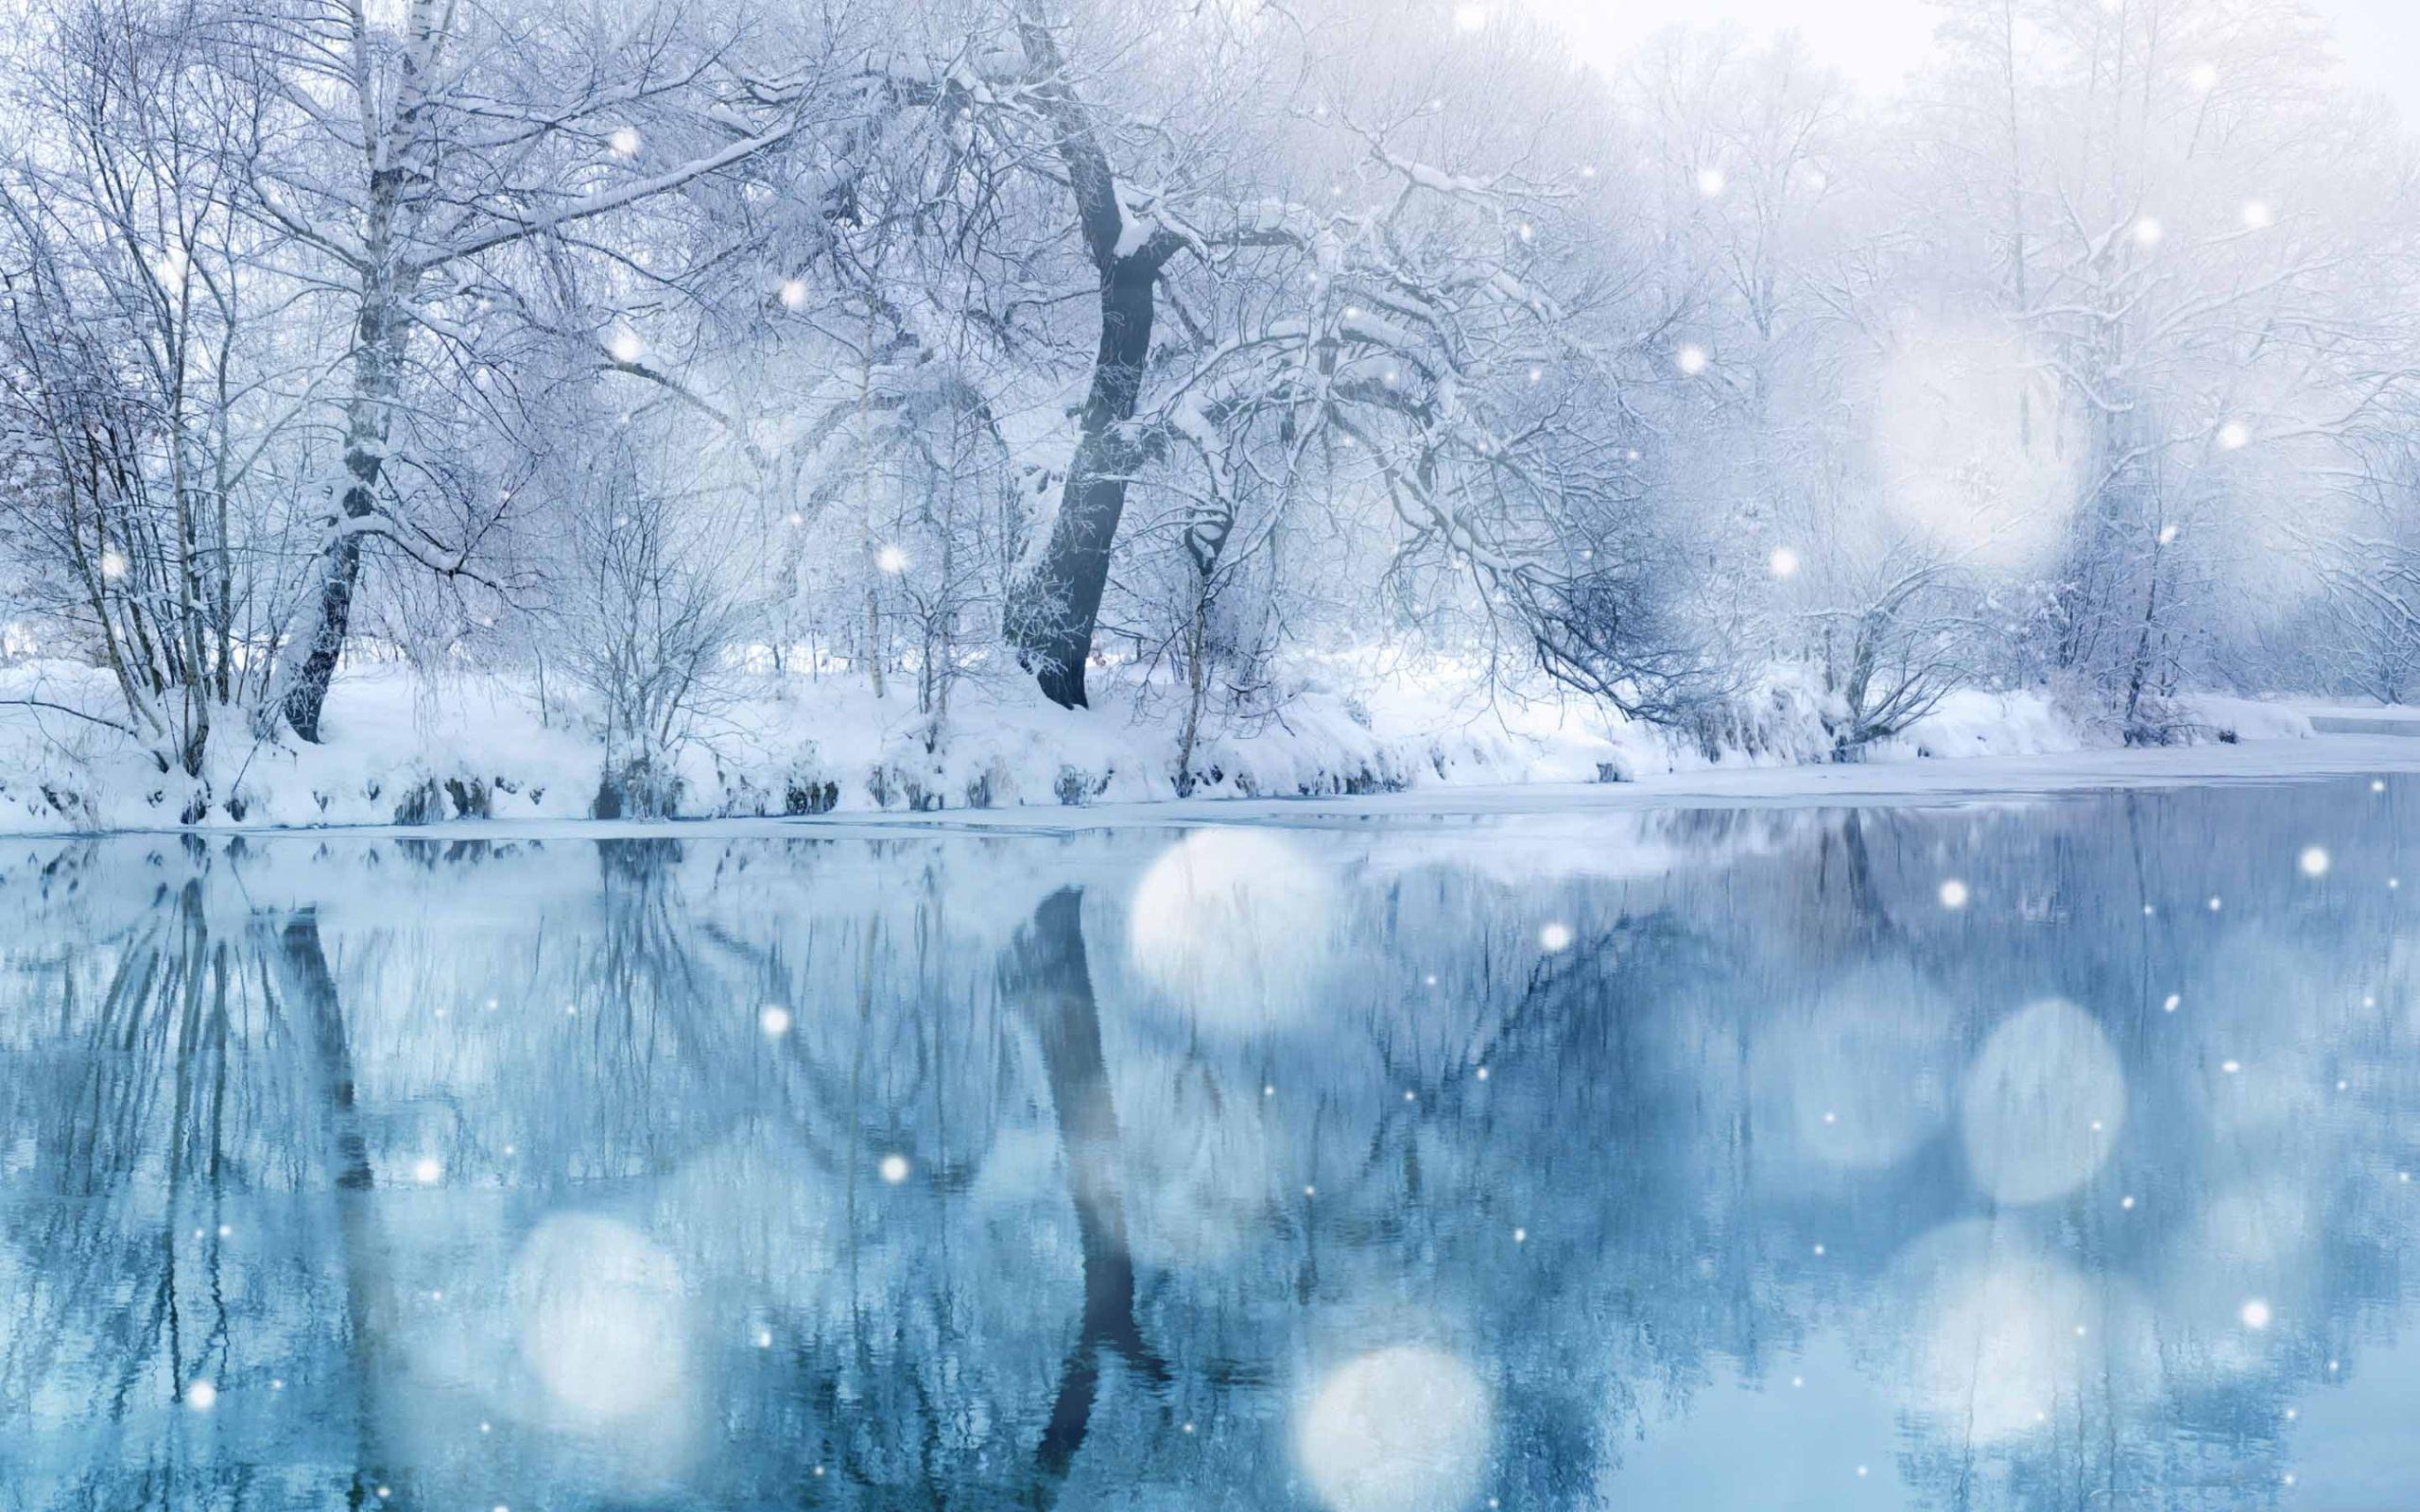 Hình nền tuyết đẹp: Bạn đang tìm kiếm một tấm hình nền đẹp ấn tượng với tuyết xóa phủ nhưng không biết nên chọn loại nào? Xem ngay bộ sưu tập hình nền tuyết đẹp của chúng tôi để tìm kiếm một tấm hình thật ý nghĩa và phù hợp với phong cách của bạn.